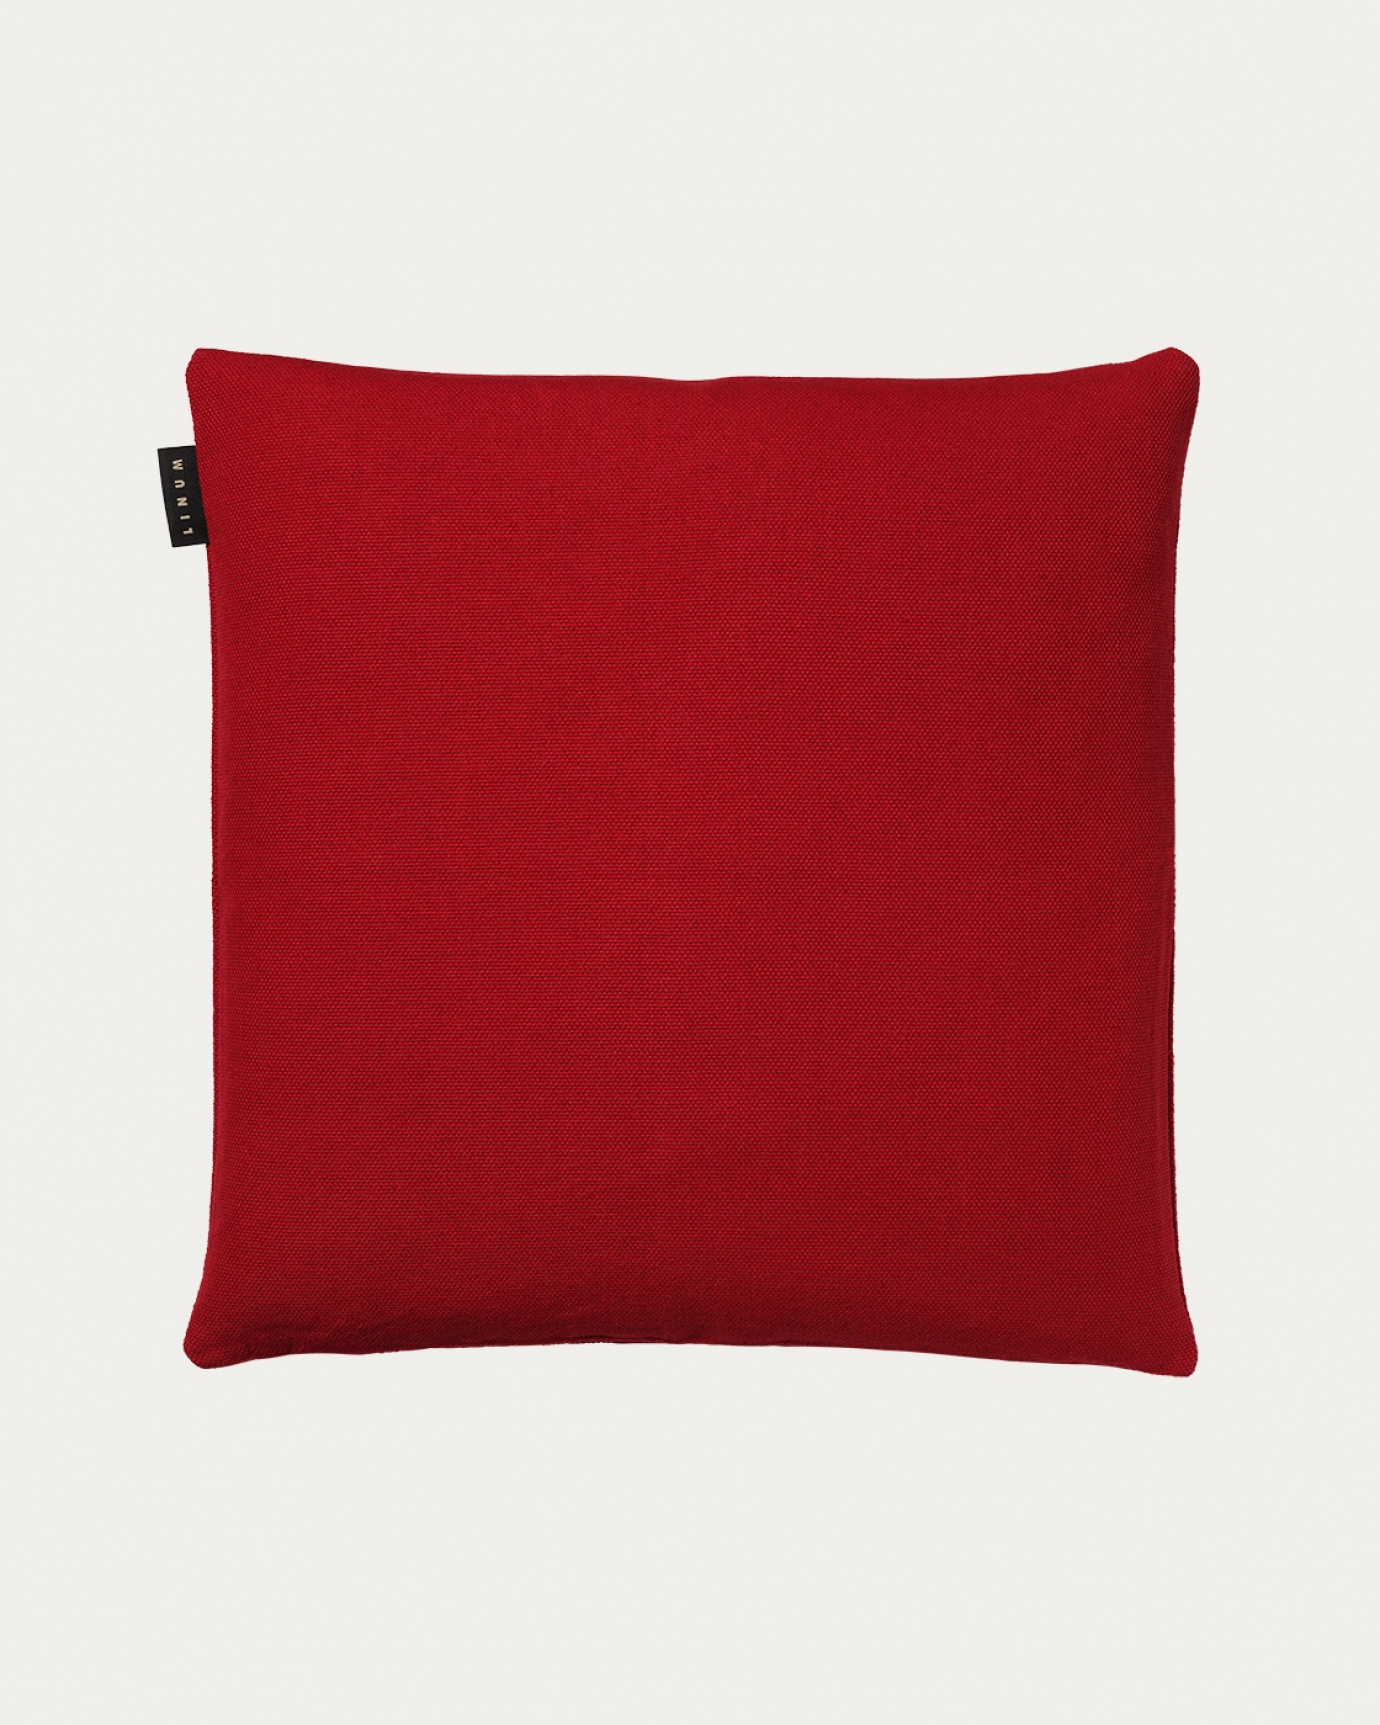 Produktbild rot PEPPER Kissenhülle aus weicher Baumwolle von LINUM DESIGN. Einfach zu waschen und langlebig für Generationen. Größe 50x50 cm.